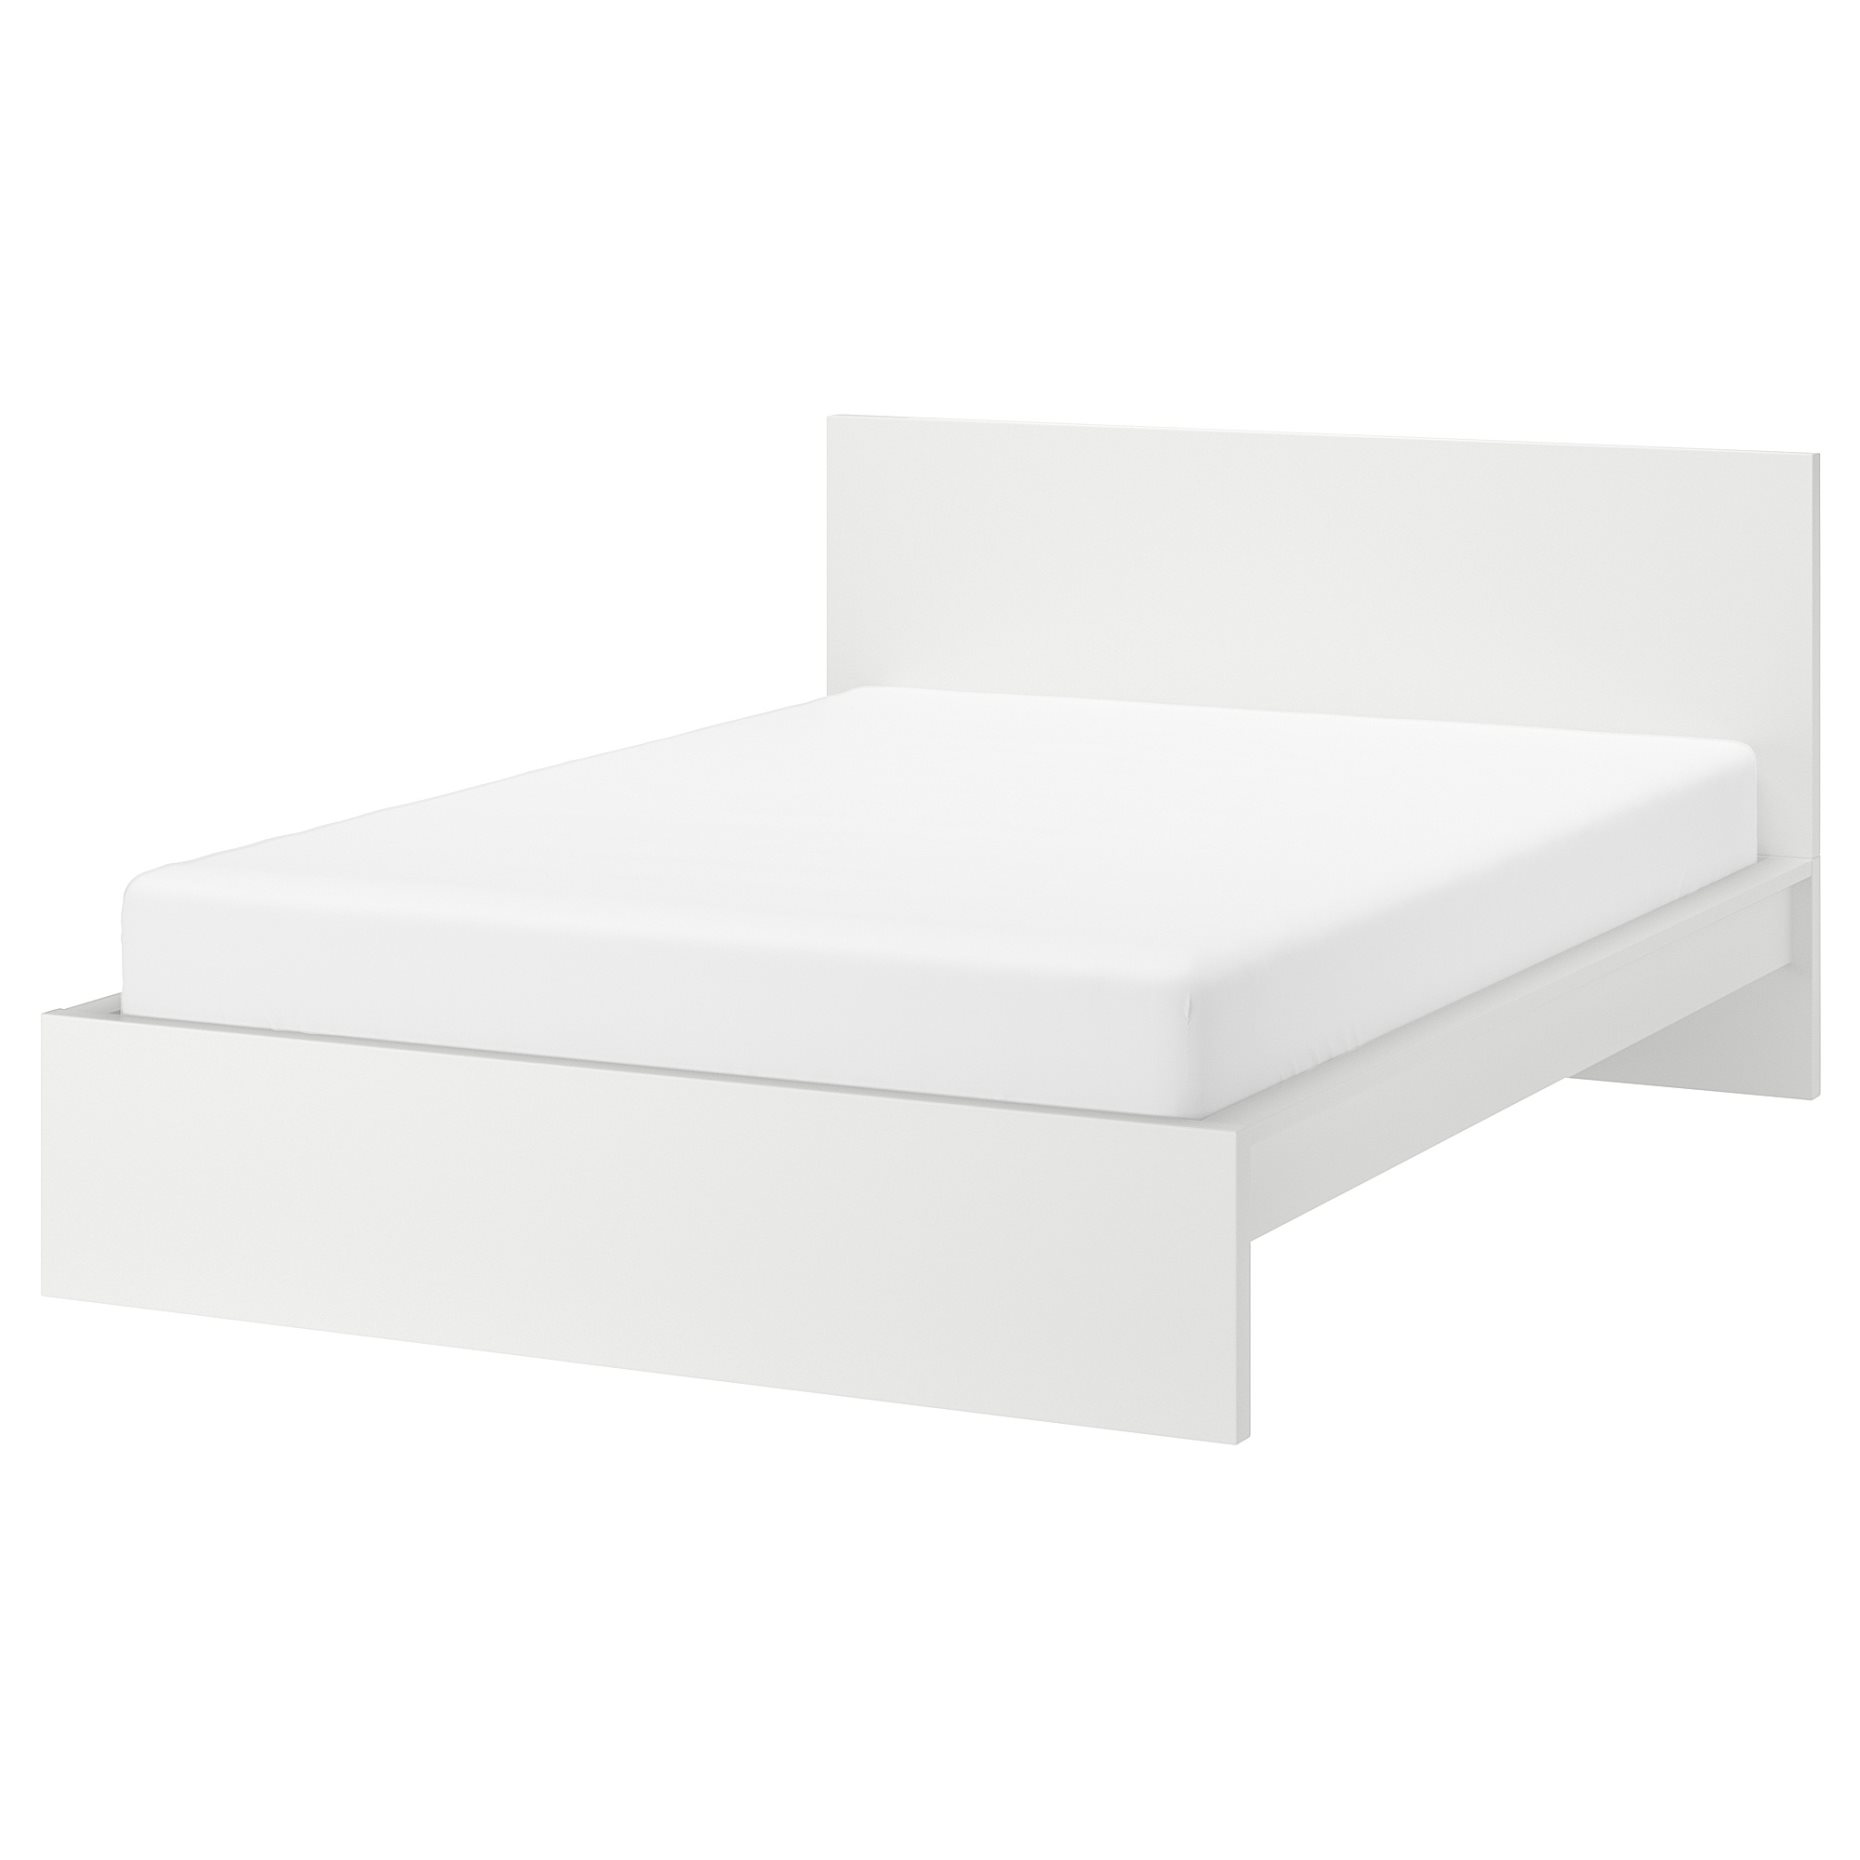 MALM, bed frame/high, 160X200 cm, 190.190.85